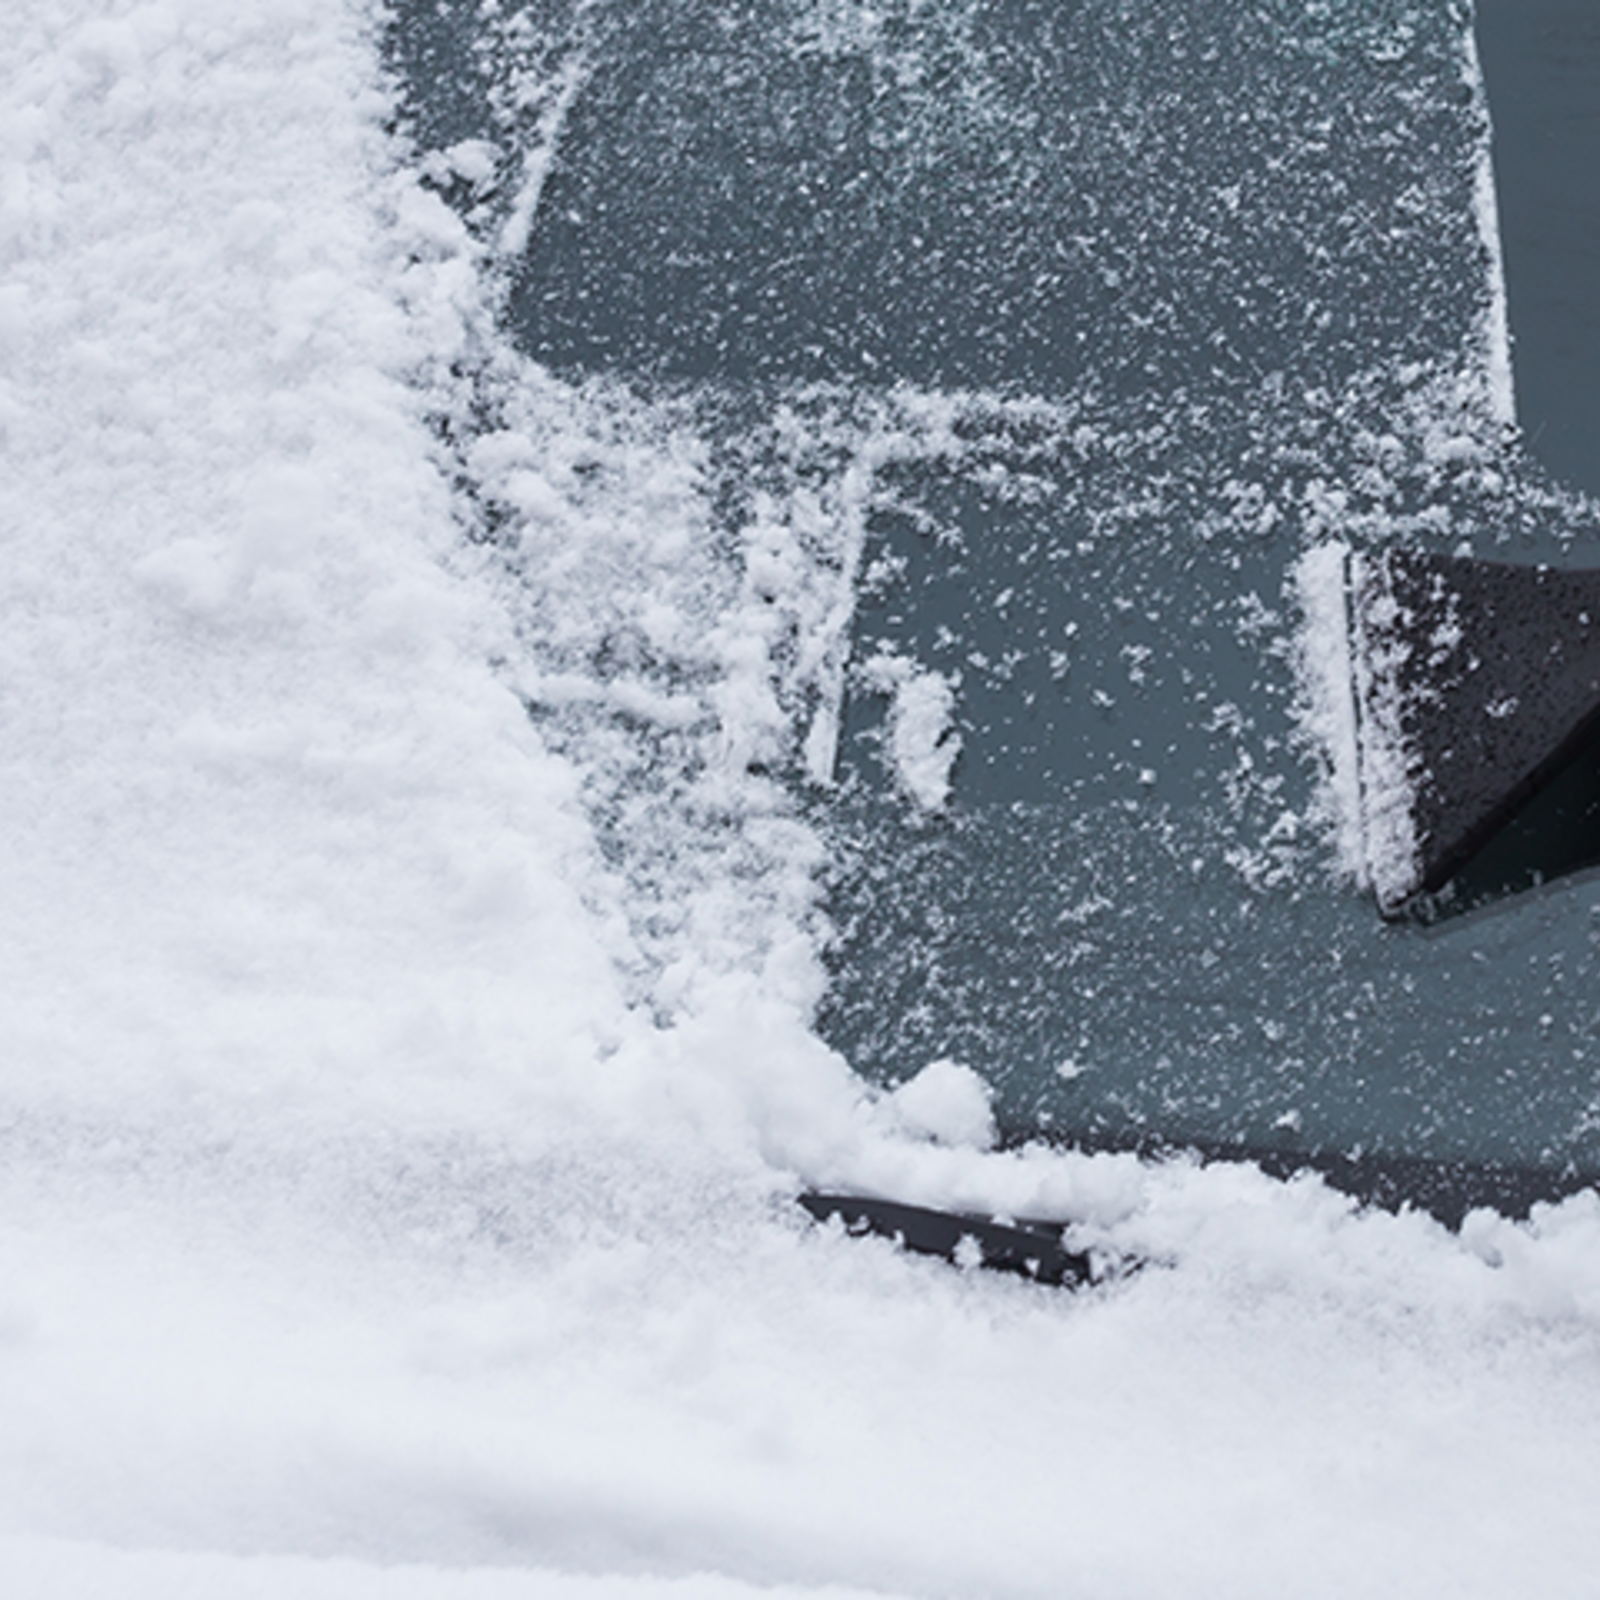 Es geht auch umweltfreundlich: So befreit man sein Auto nachhaltig von Eis  und Schnee - openPR